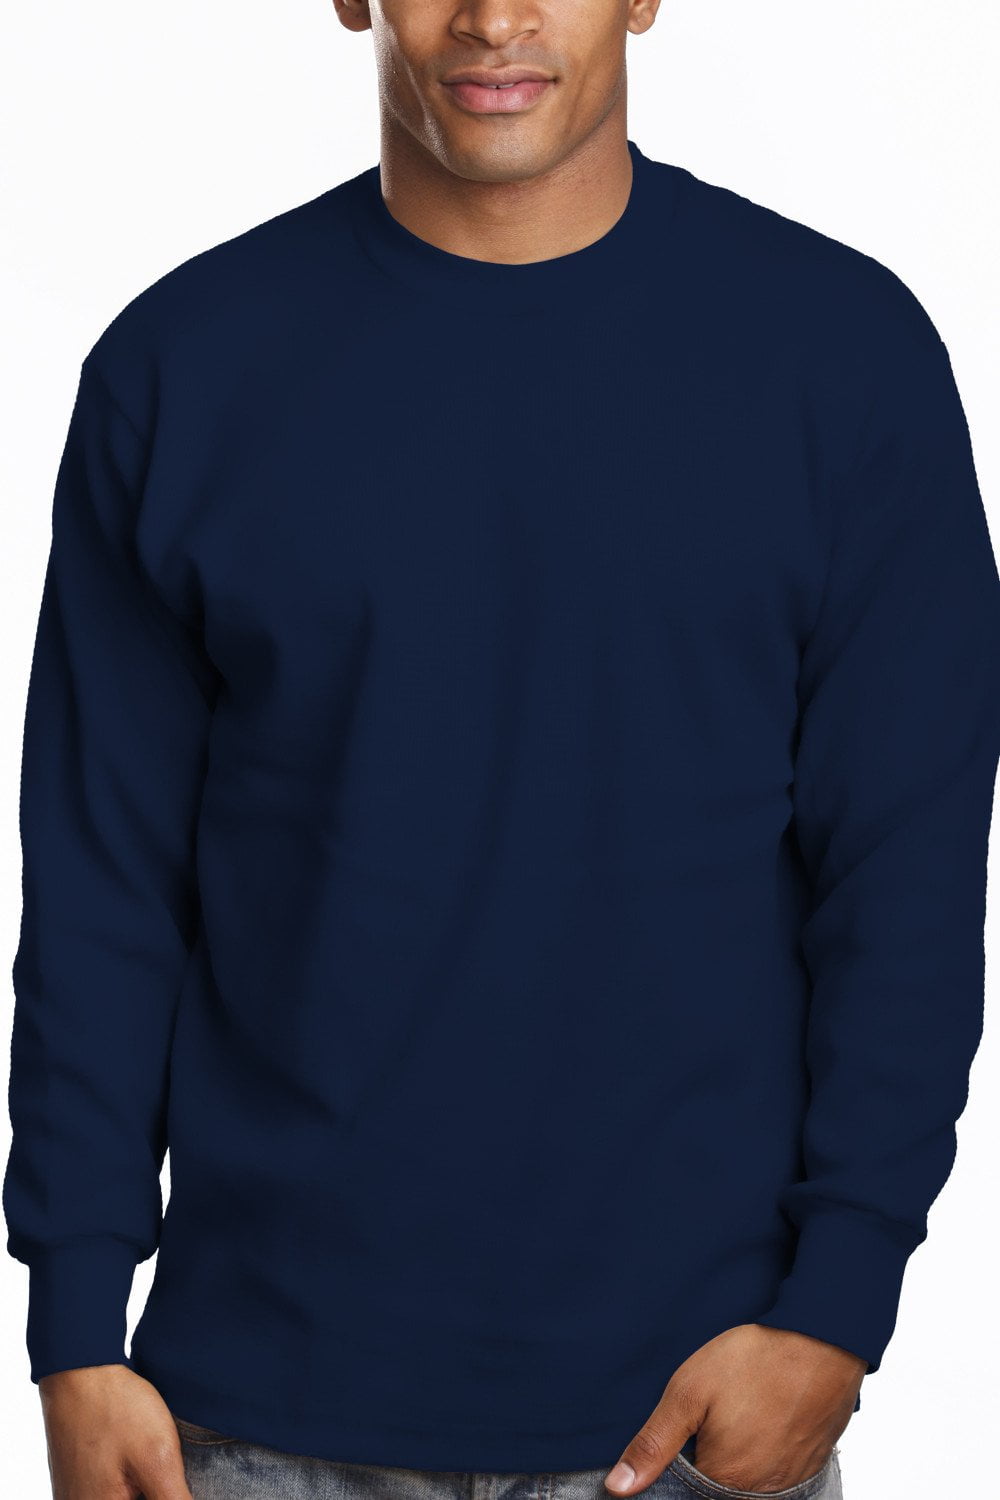 Pro 5 Long Sleeve T-Shirt,Navy Blue,4XL Tall - Walmart.com